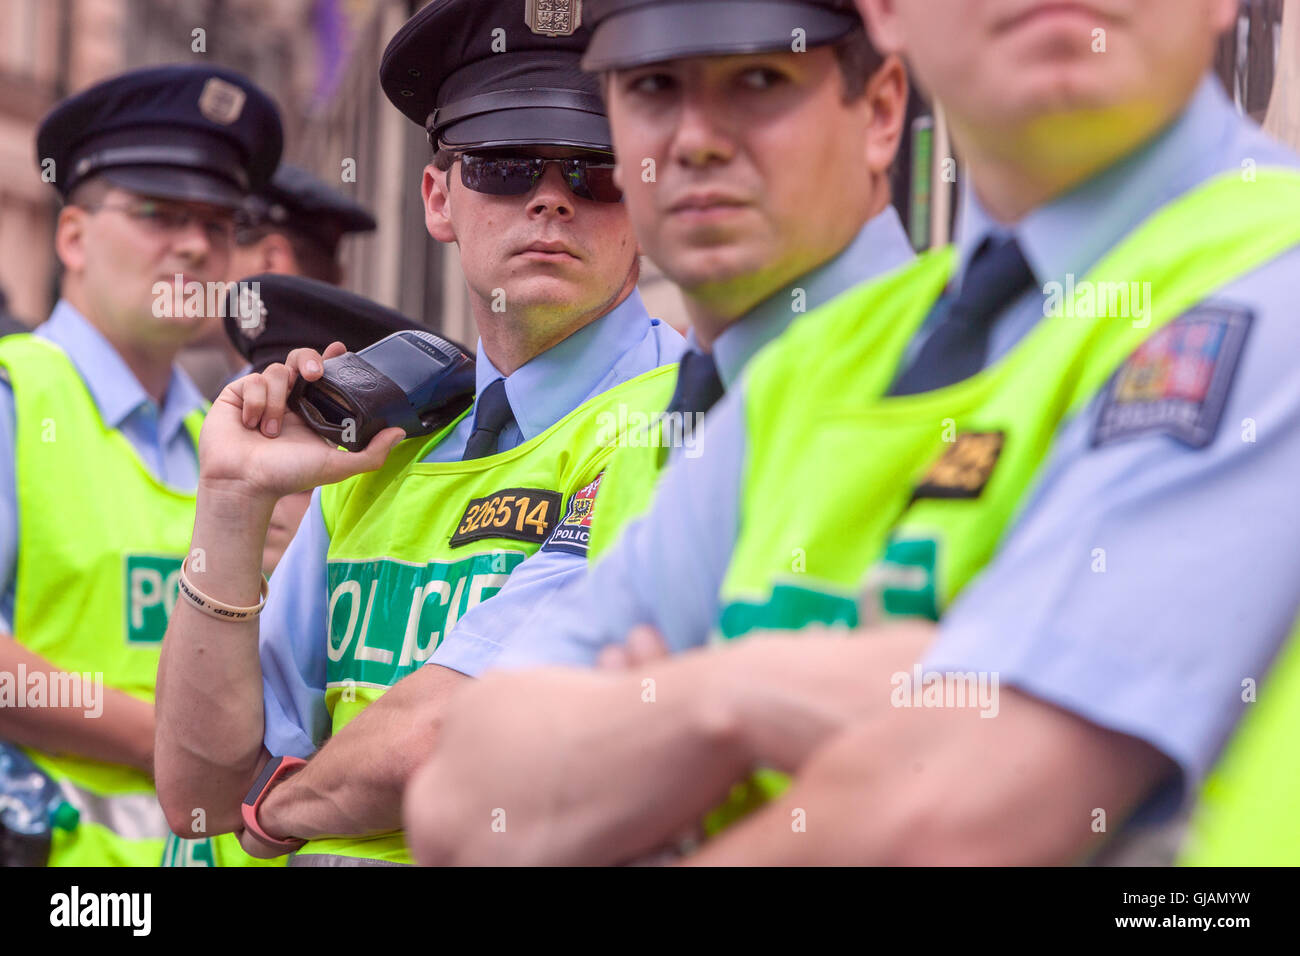 Poliziotti cechi quattro poliziotti con giacche riflettenti Foto Stock